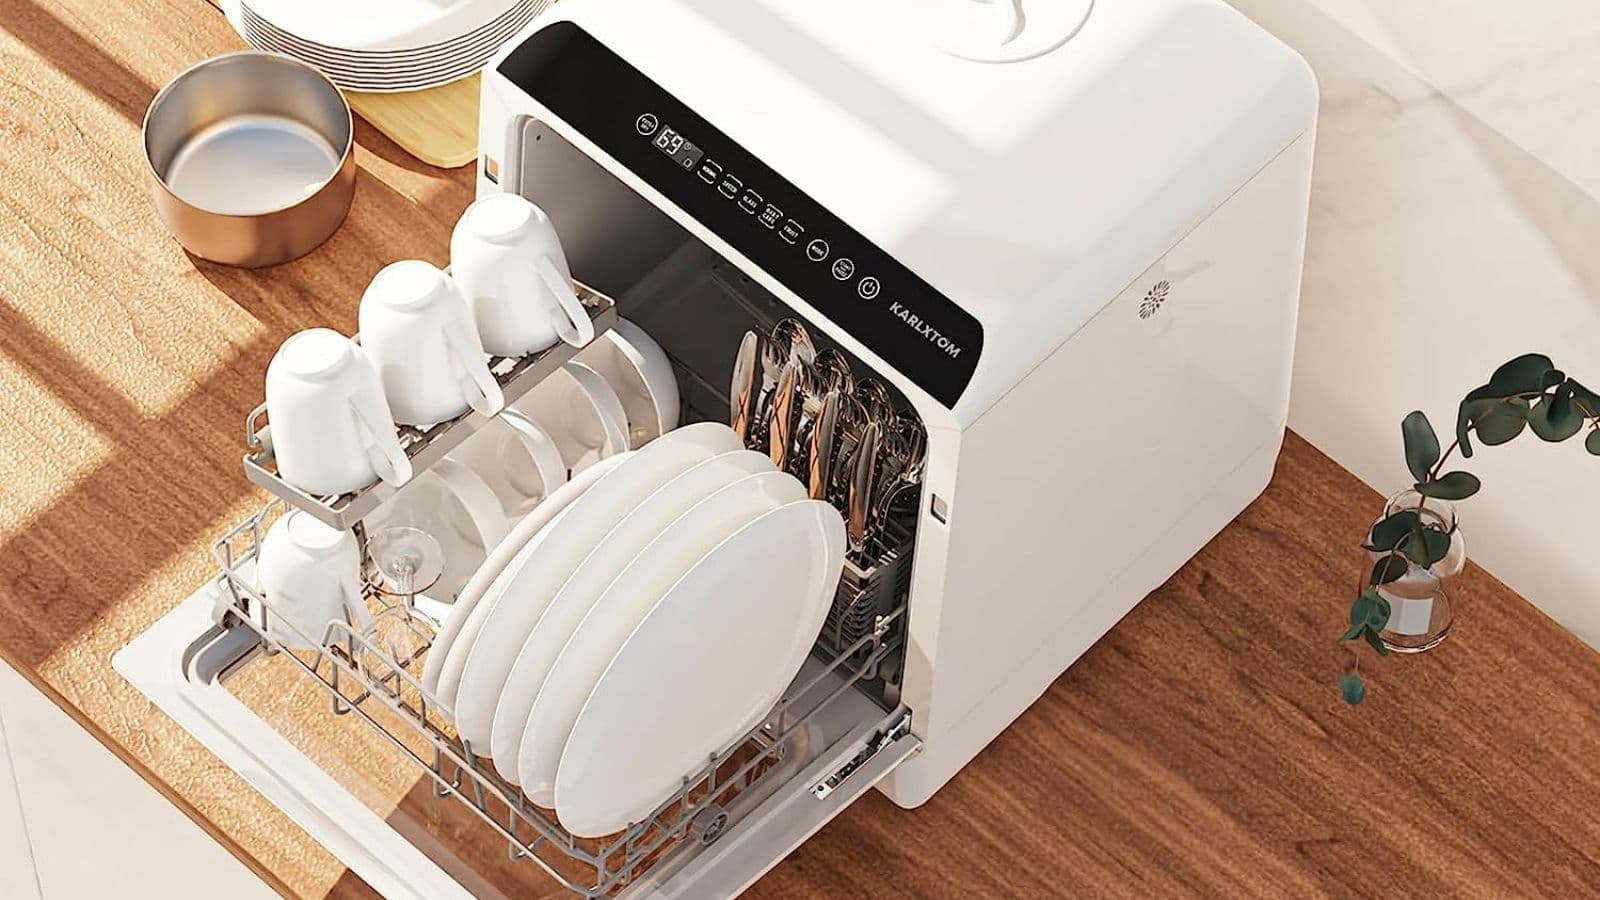 Vente flash  : découvrez ce mini lave-vaisselle sans raccordement  pendant quelques heures